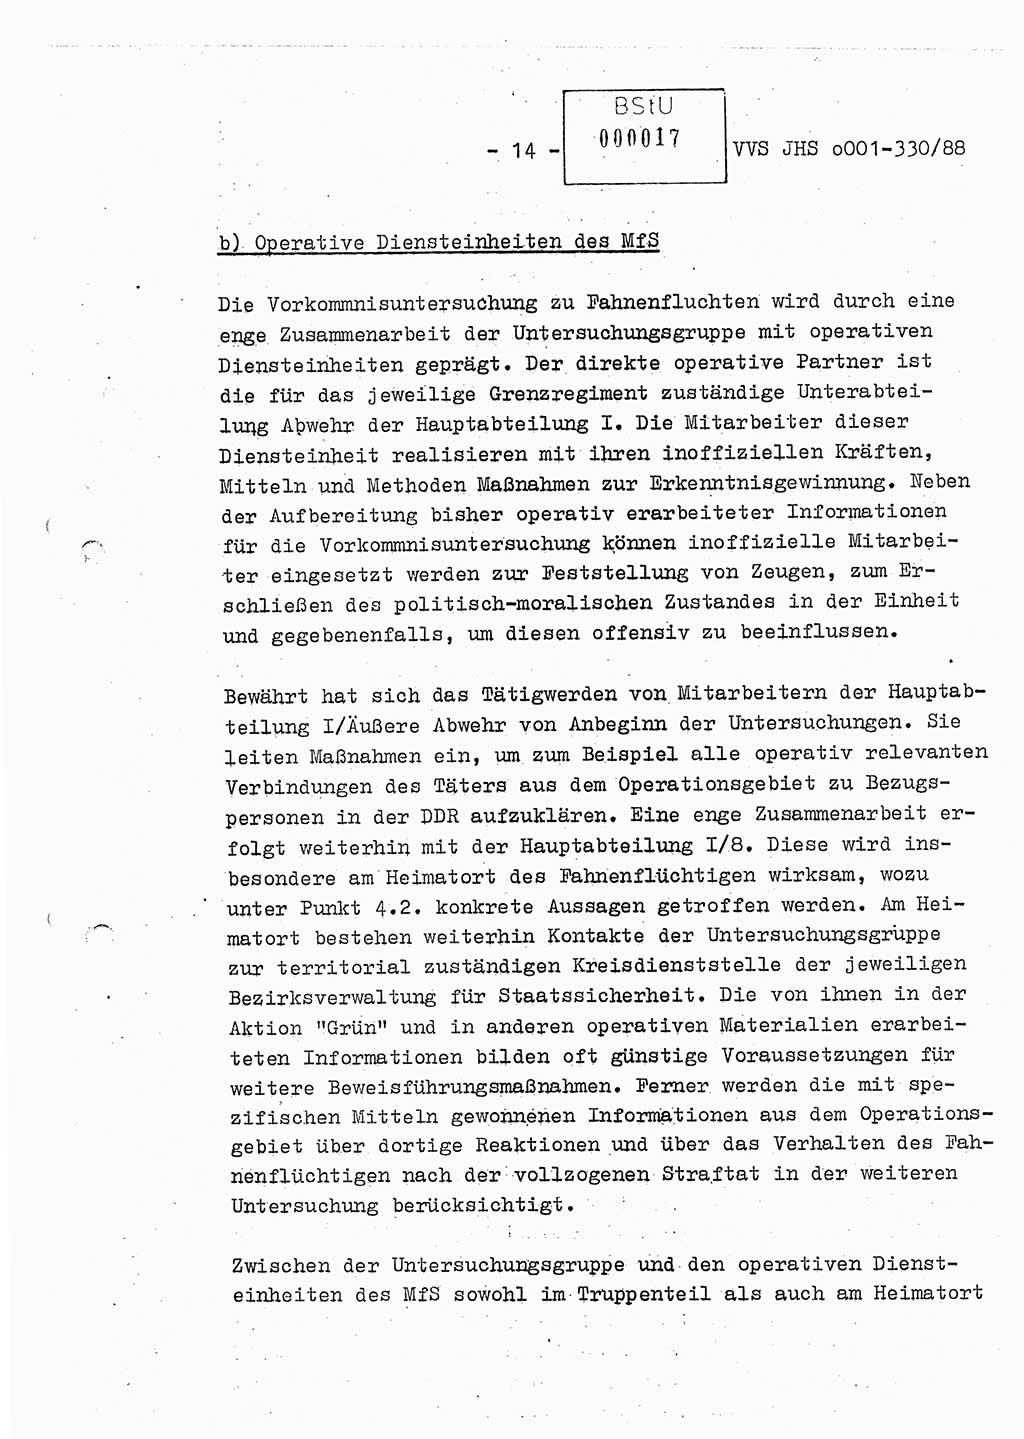 Diplomarbeit Offiziersschüler Thomas Mühle (HA Ⅸ/6), Ministerium für Staatssicherheit (MfS) [Deutsche Demokratische Republik (DDR)], Juristische Hochschule (JHS), Vertrauliche Verschlußsache (VVS) o001-330/88, Potsdam 1988, Seite 14 (Dipl.-Arb. MfS DDR JHS VVS o001-330/88 1988, S. 14)